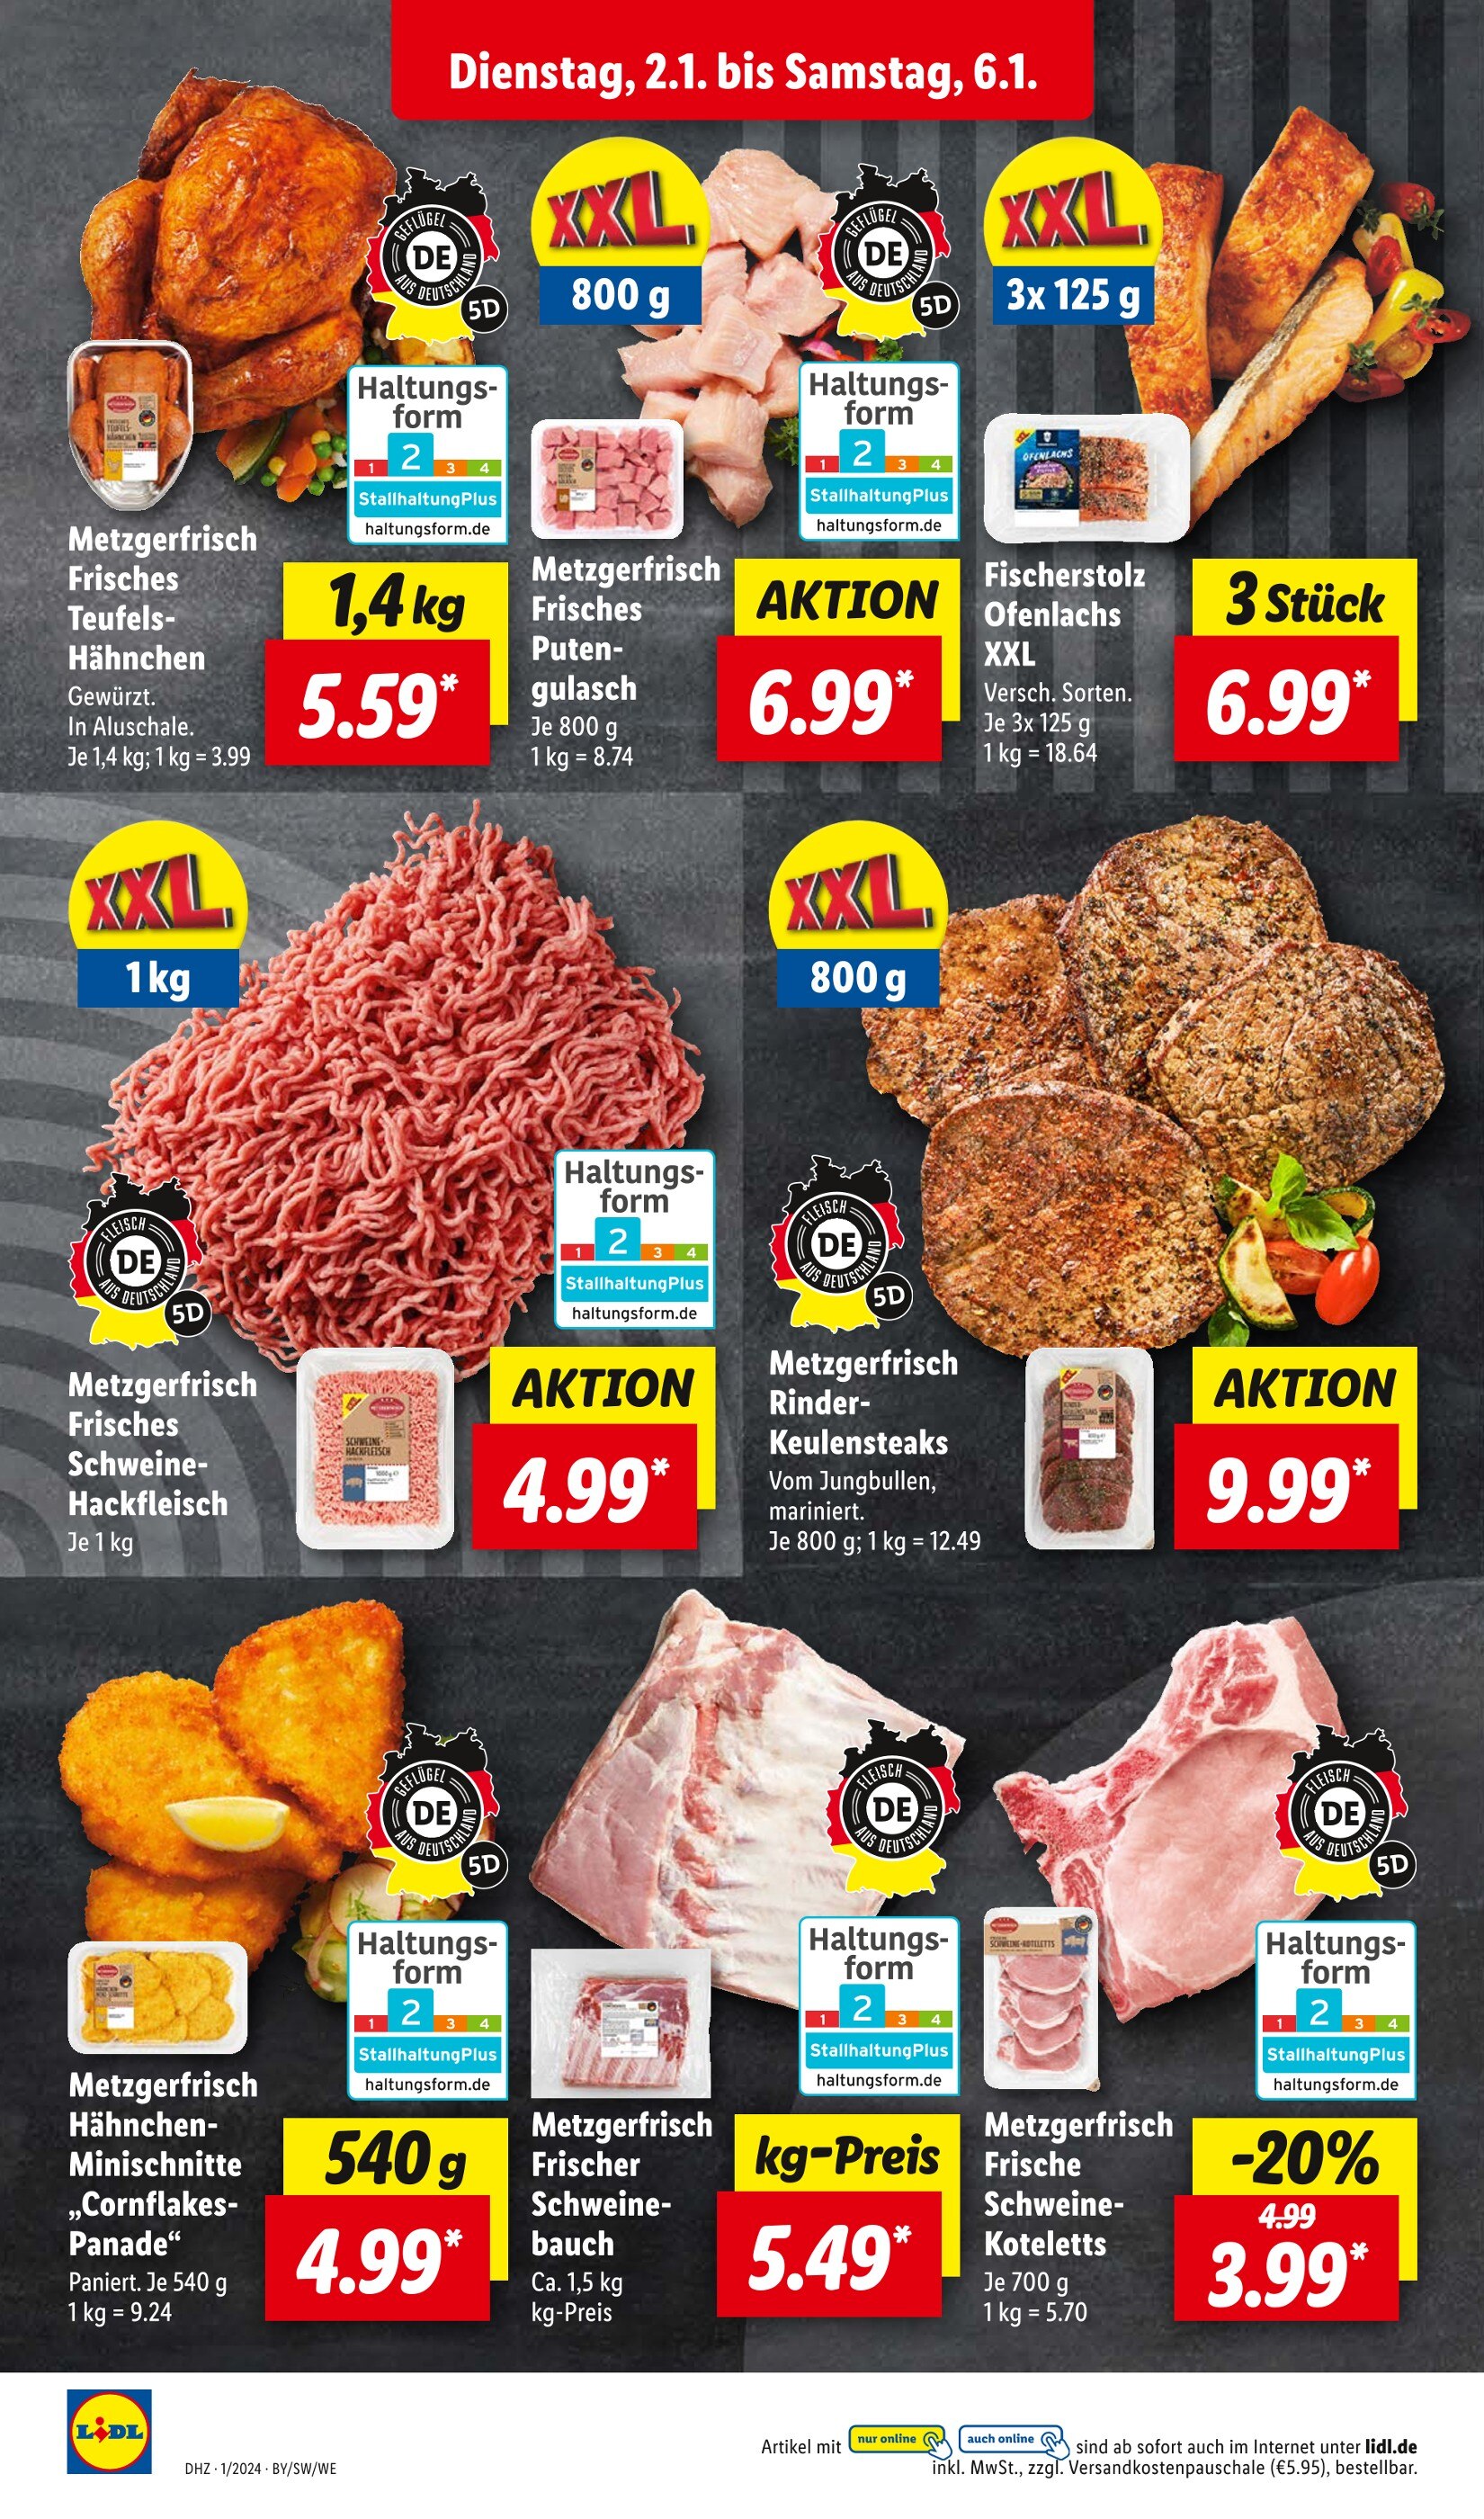 Steak Angebote in Regensburg - jetzt günstig kaufen! 🔥